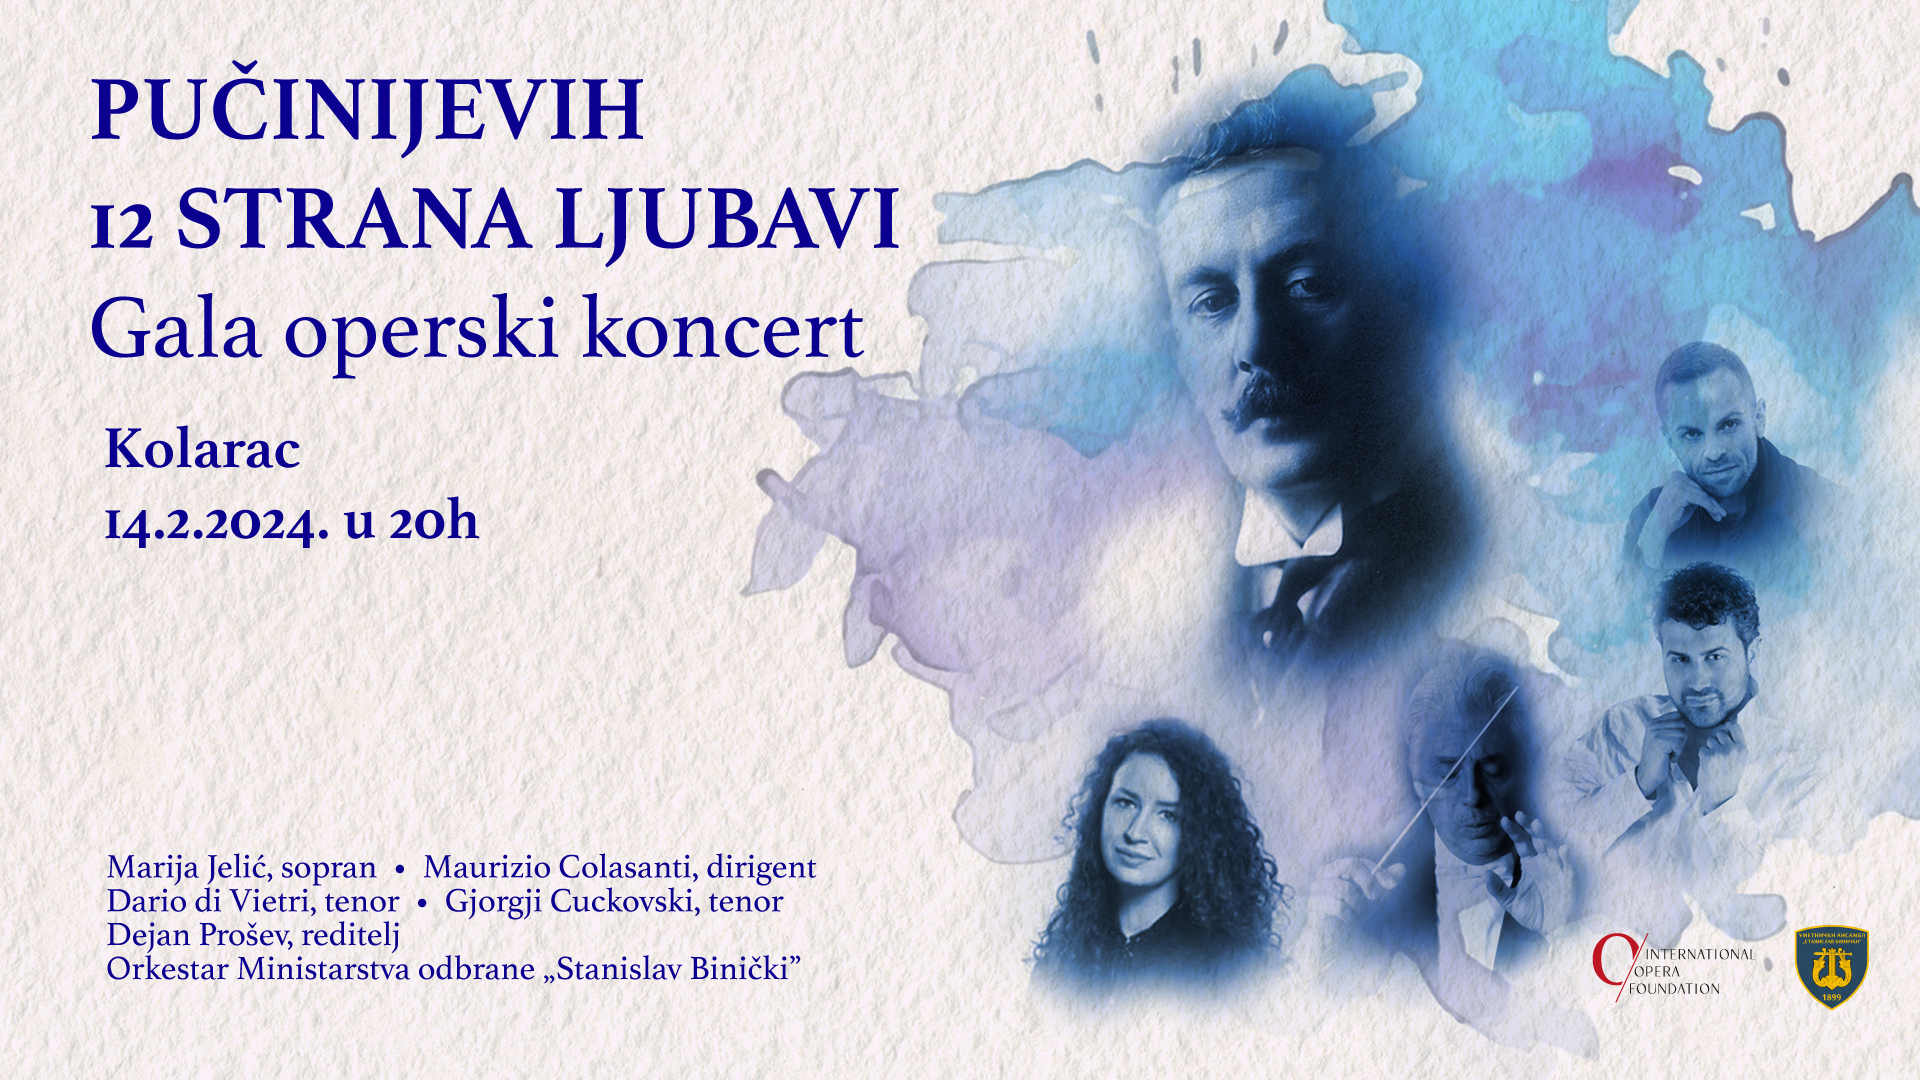 Ekskluzivni gala operski koncert, “Pučinijevih 12 strana ljubavi” 14.02.2024. Kolarac